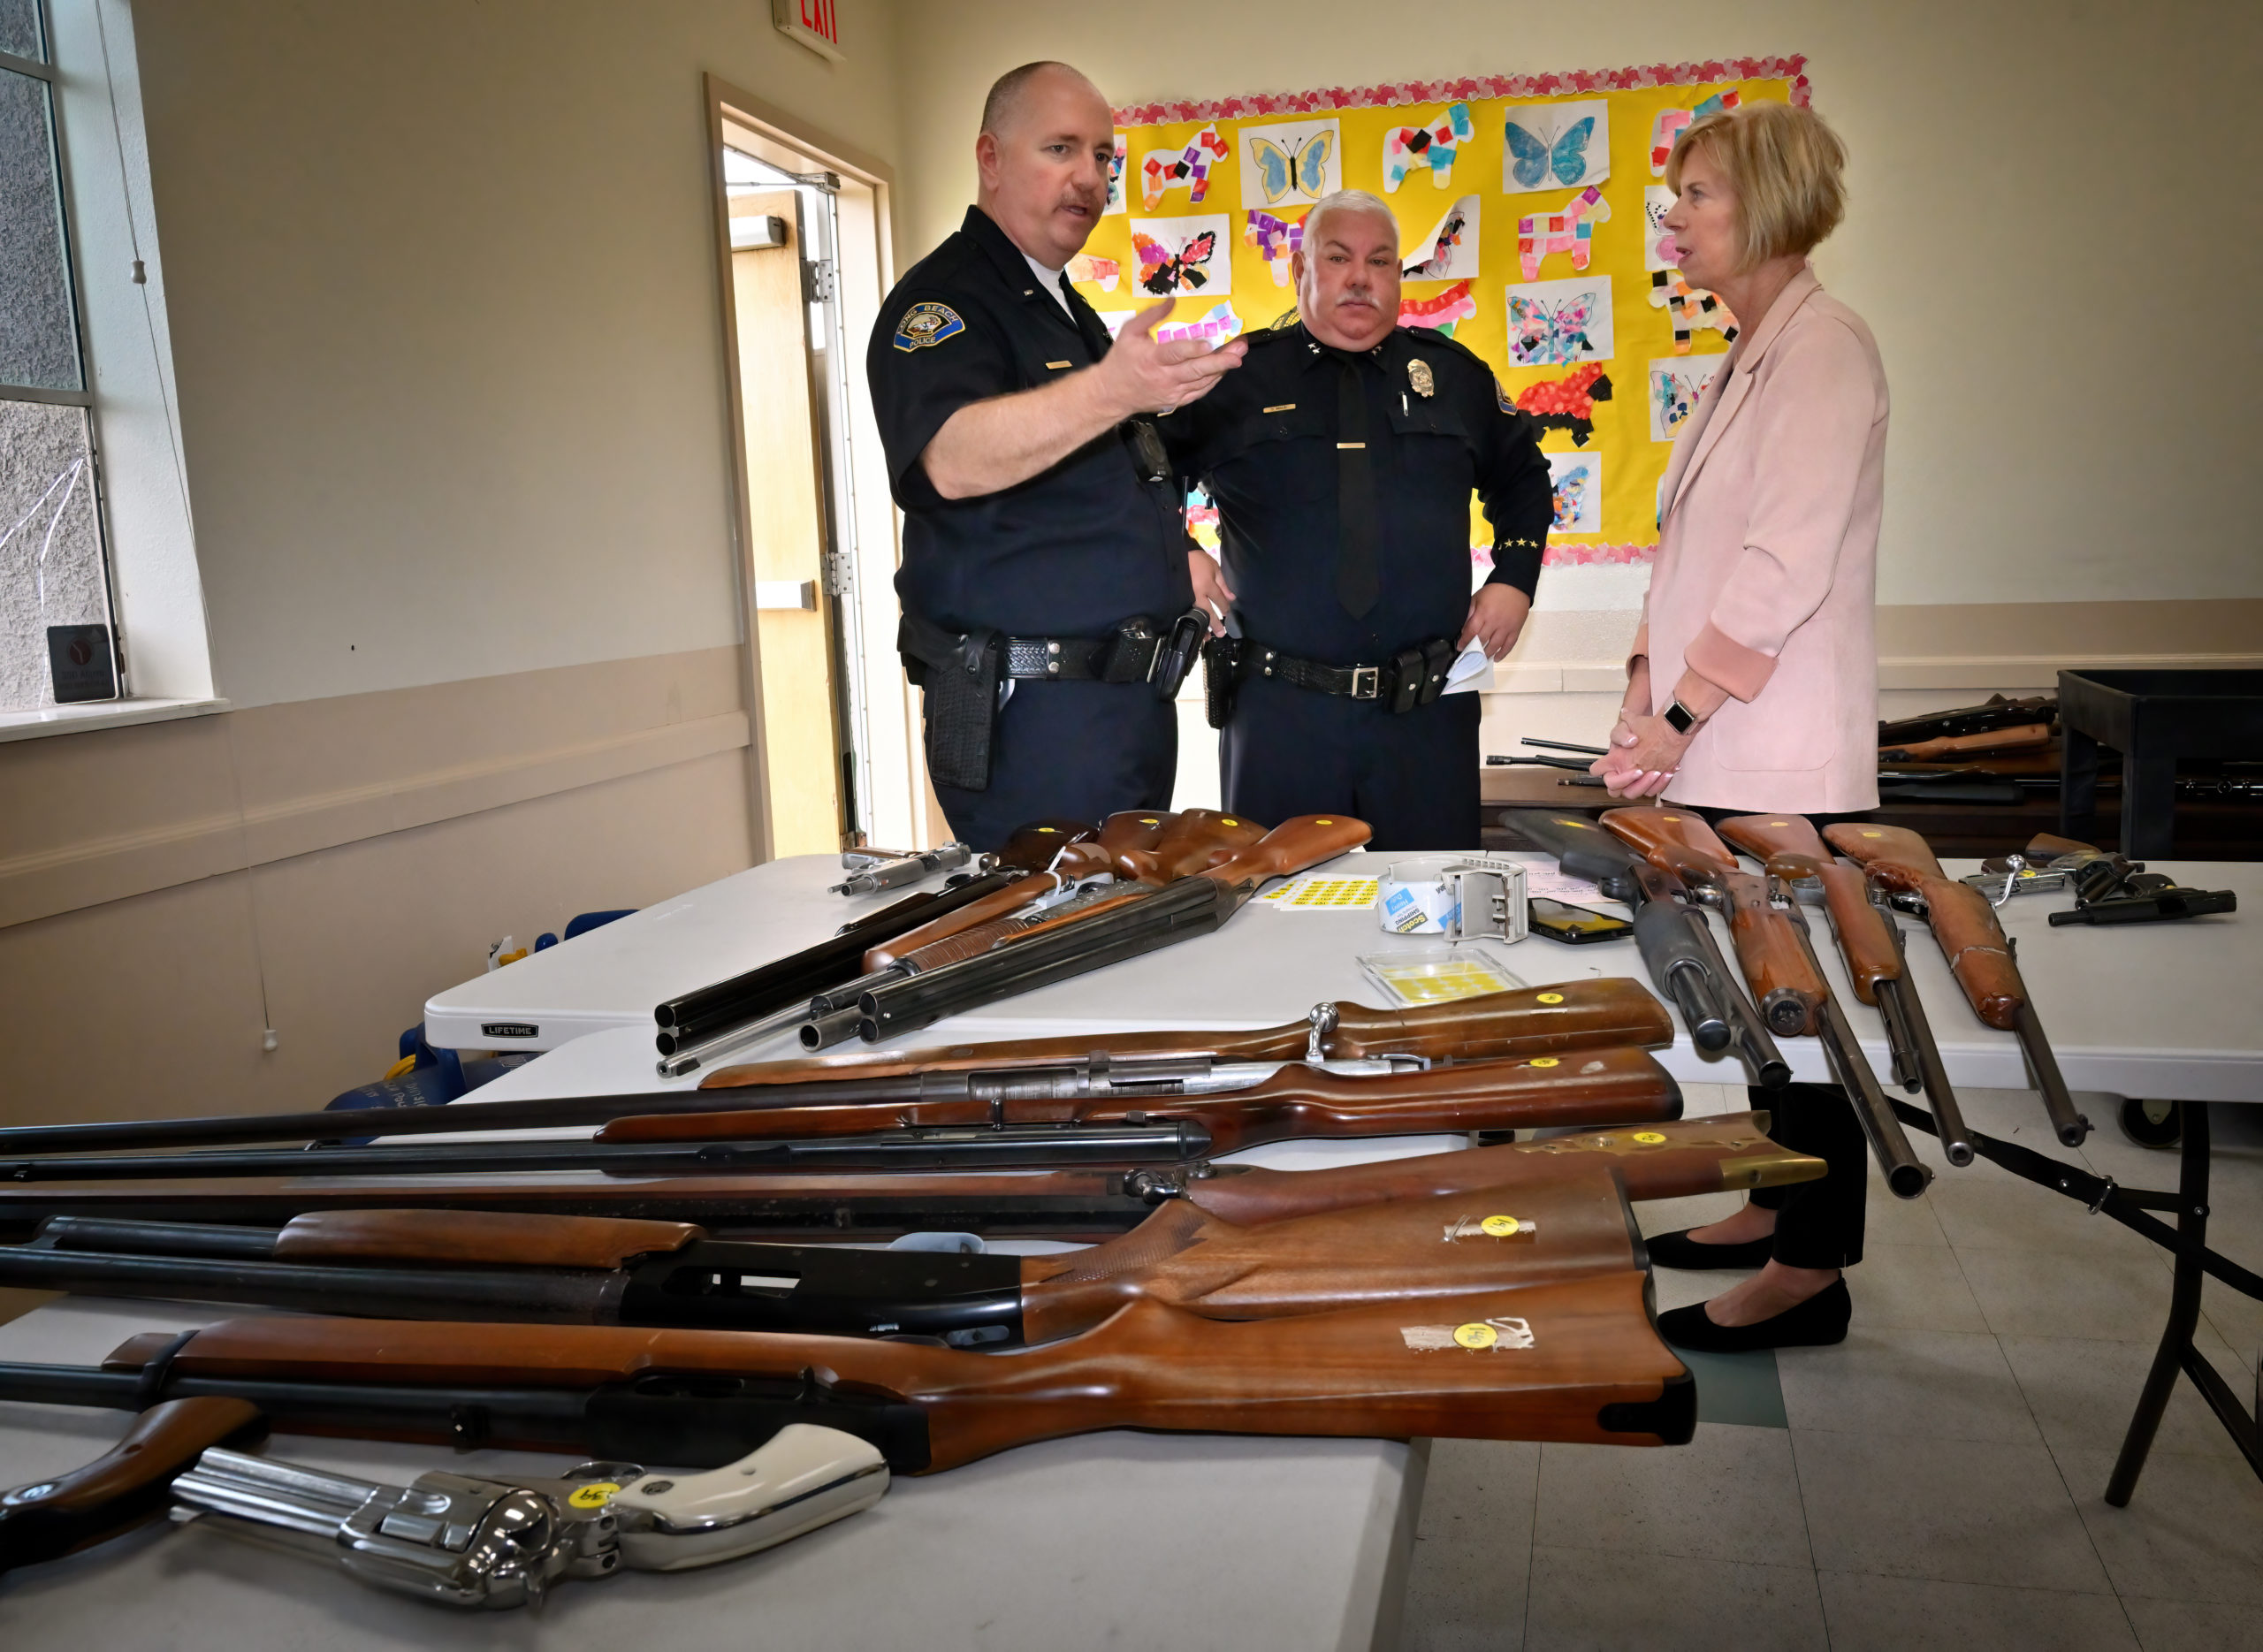 252 armas de fuego recolectadas en la recompra de armas con el supervisor Hahn y LBPD